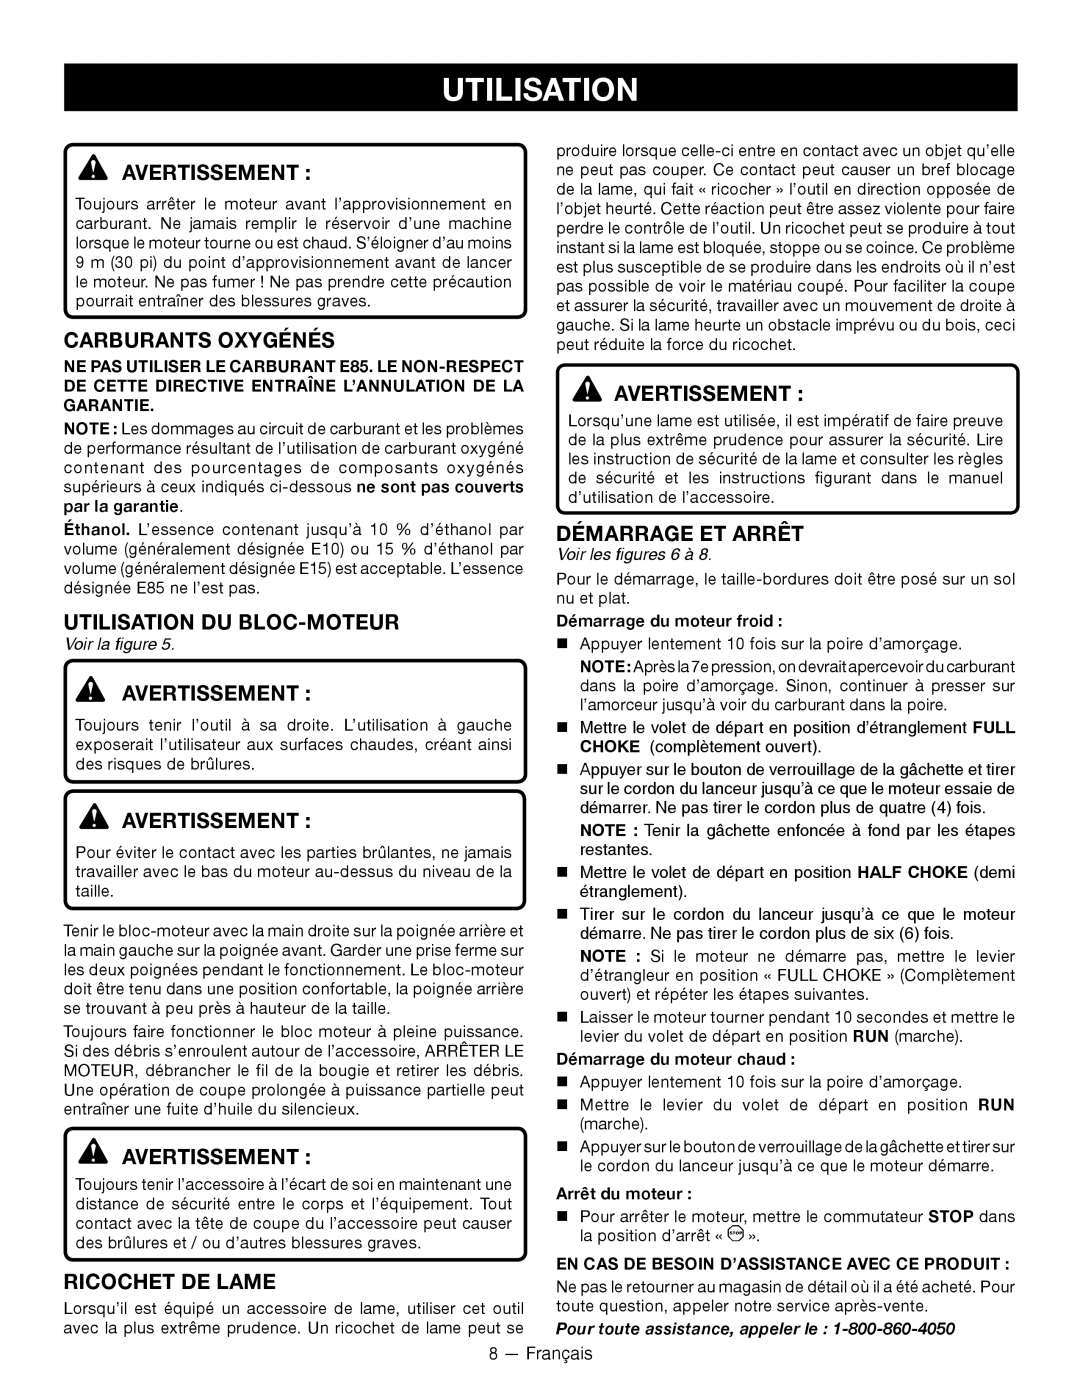 Ryobi RY28000 Carburants Oxygénés, Utilisation Du Bloc-Moteur, Ricochet De Lame, Démarrage Et Arrêt, Avertissement 